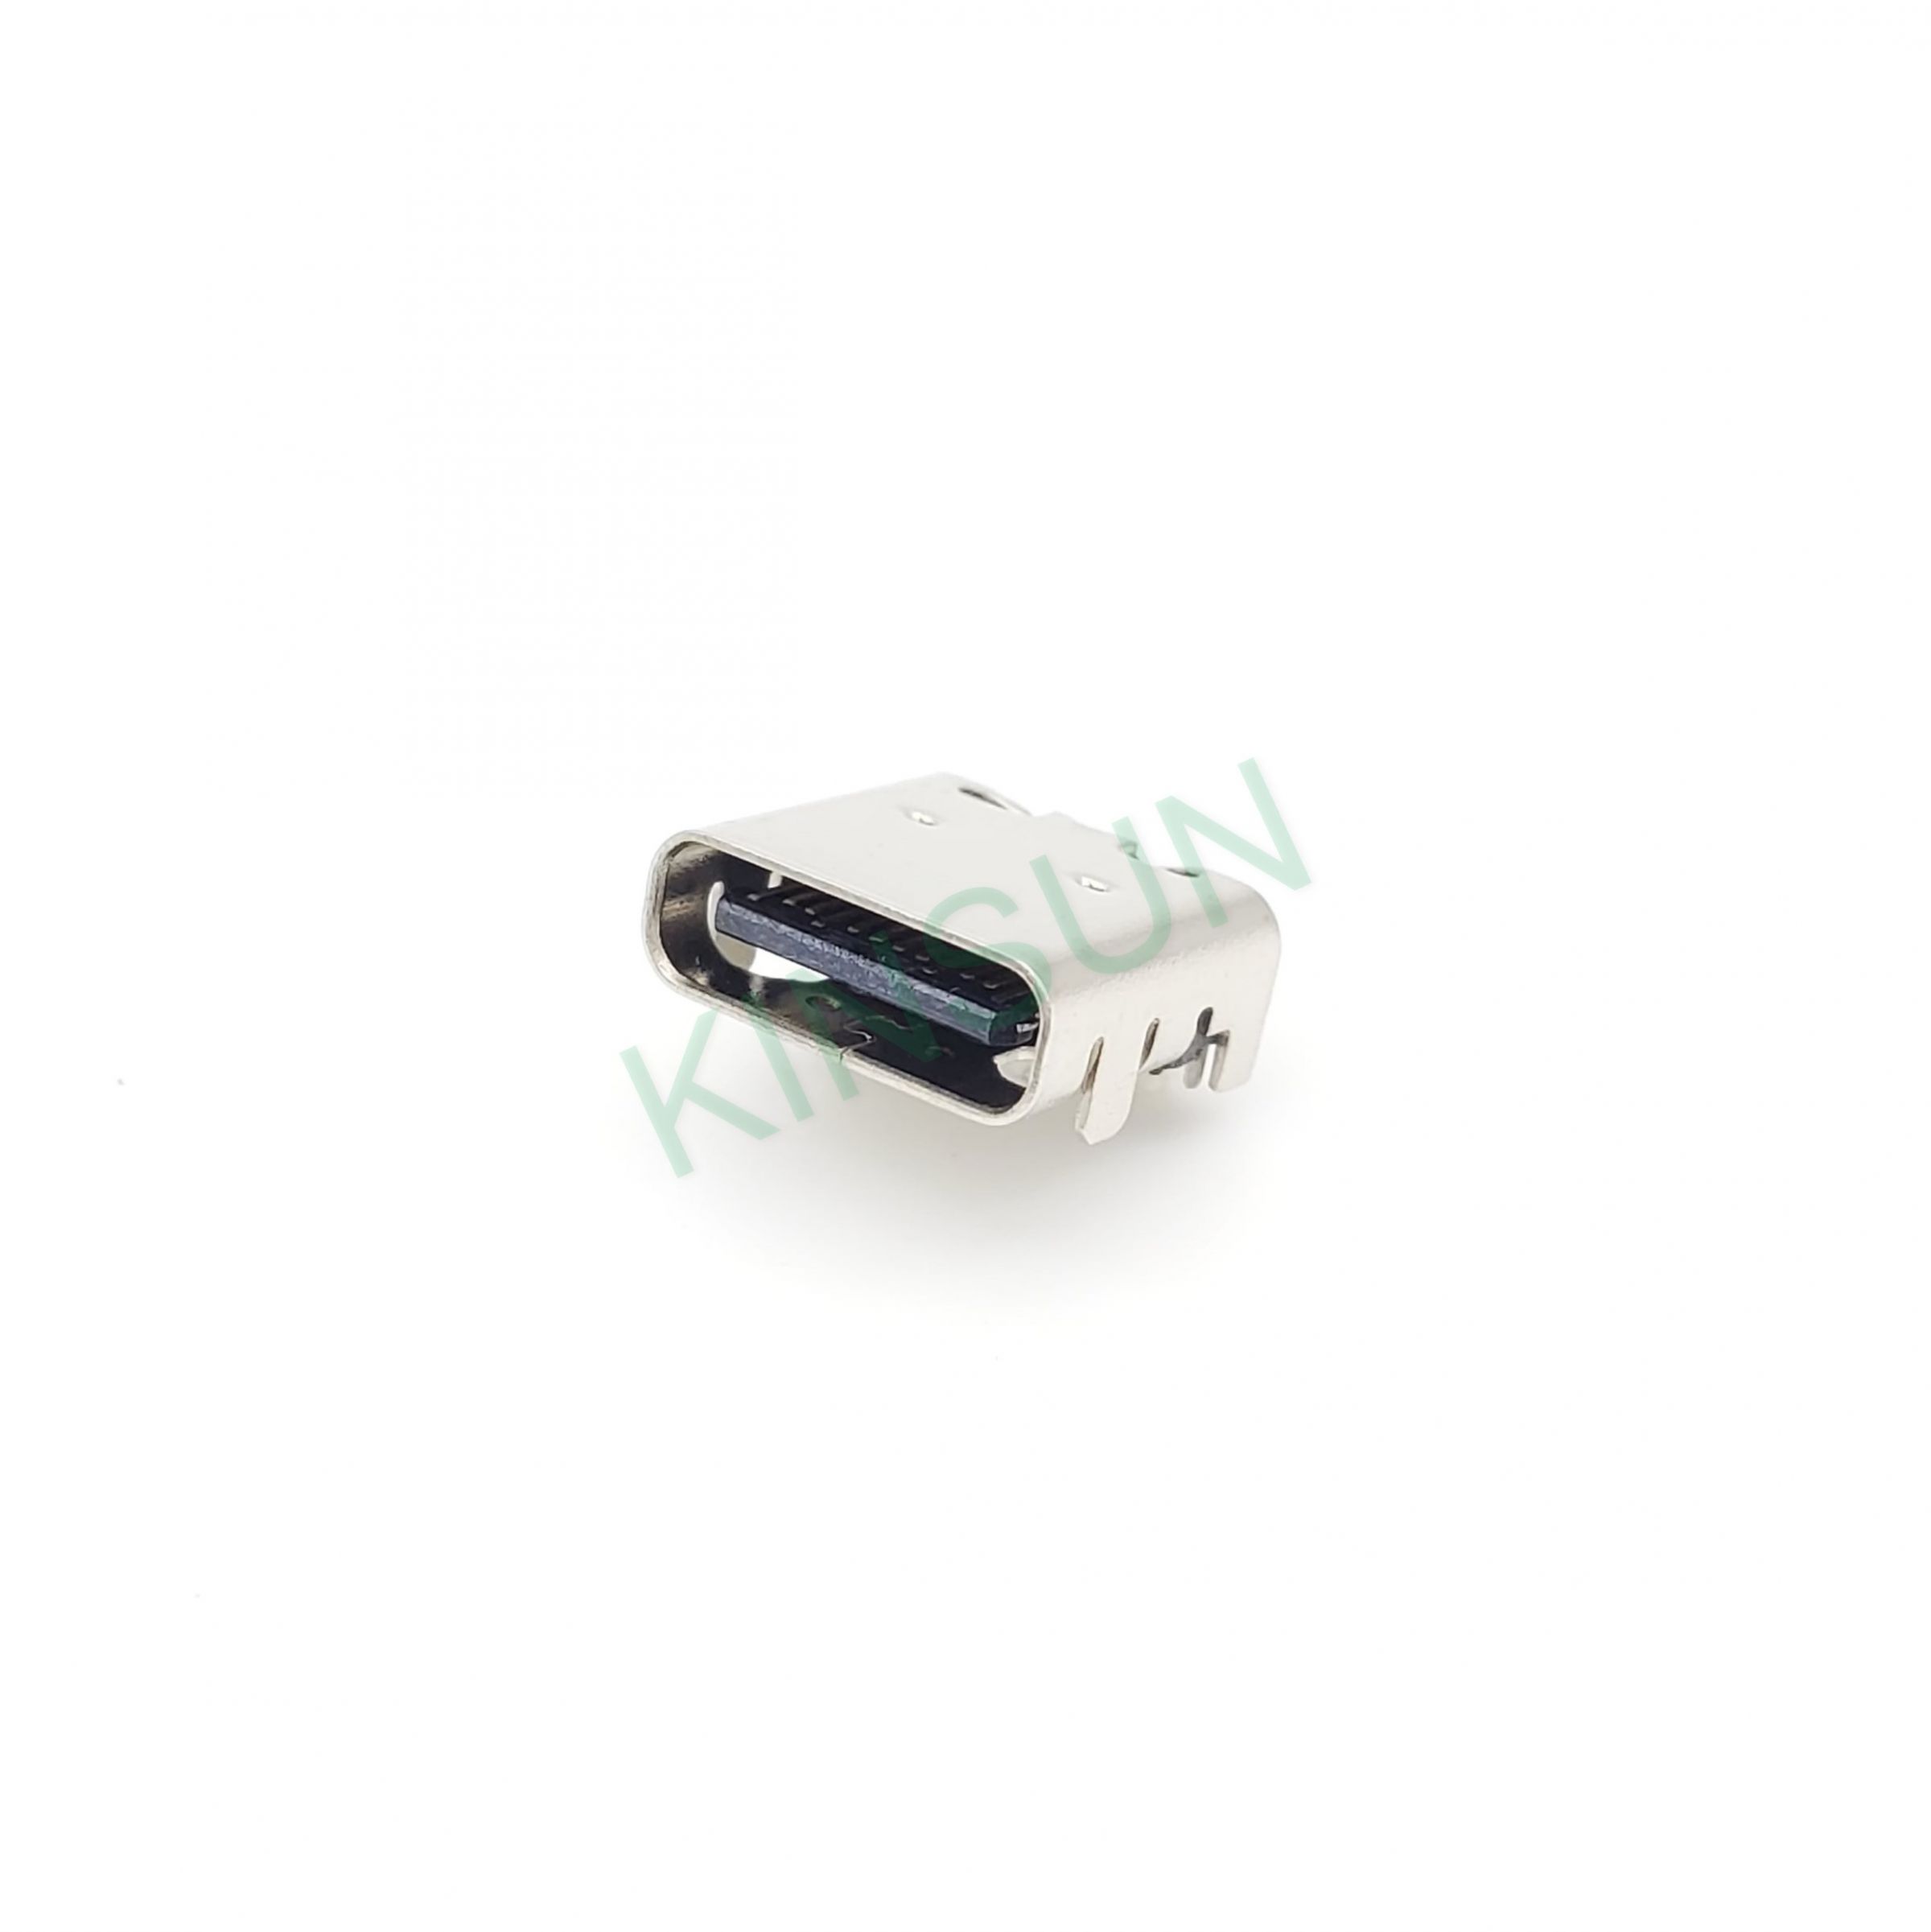 De USB Type-C 3.0 connectoren zijn beschikbaar in 24-pins en 16-pins versies